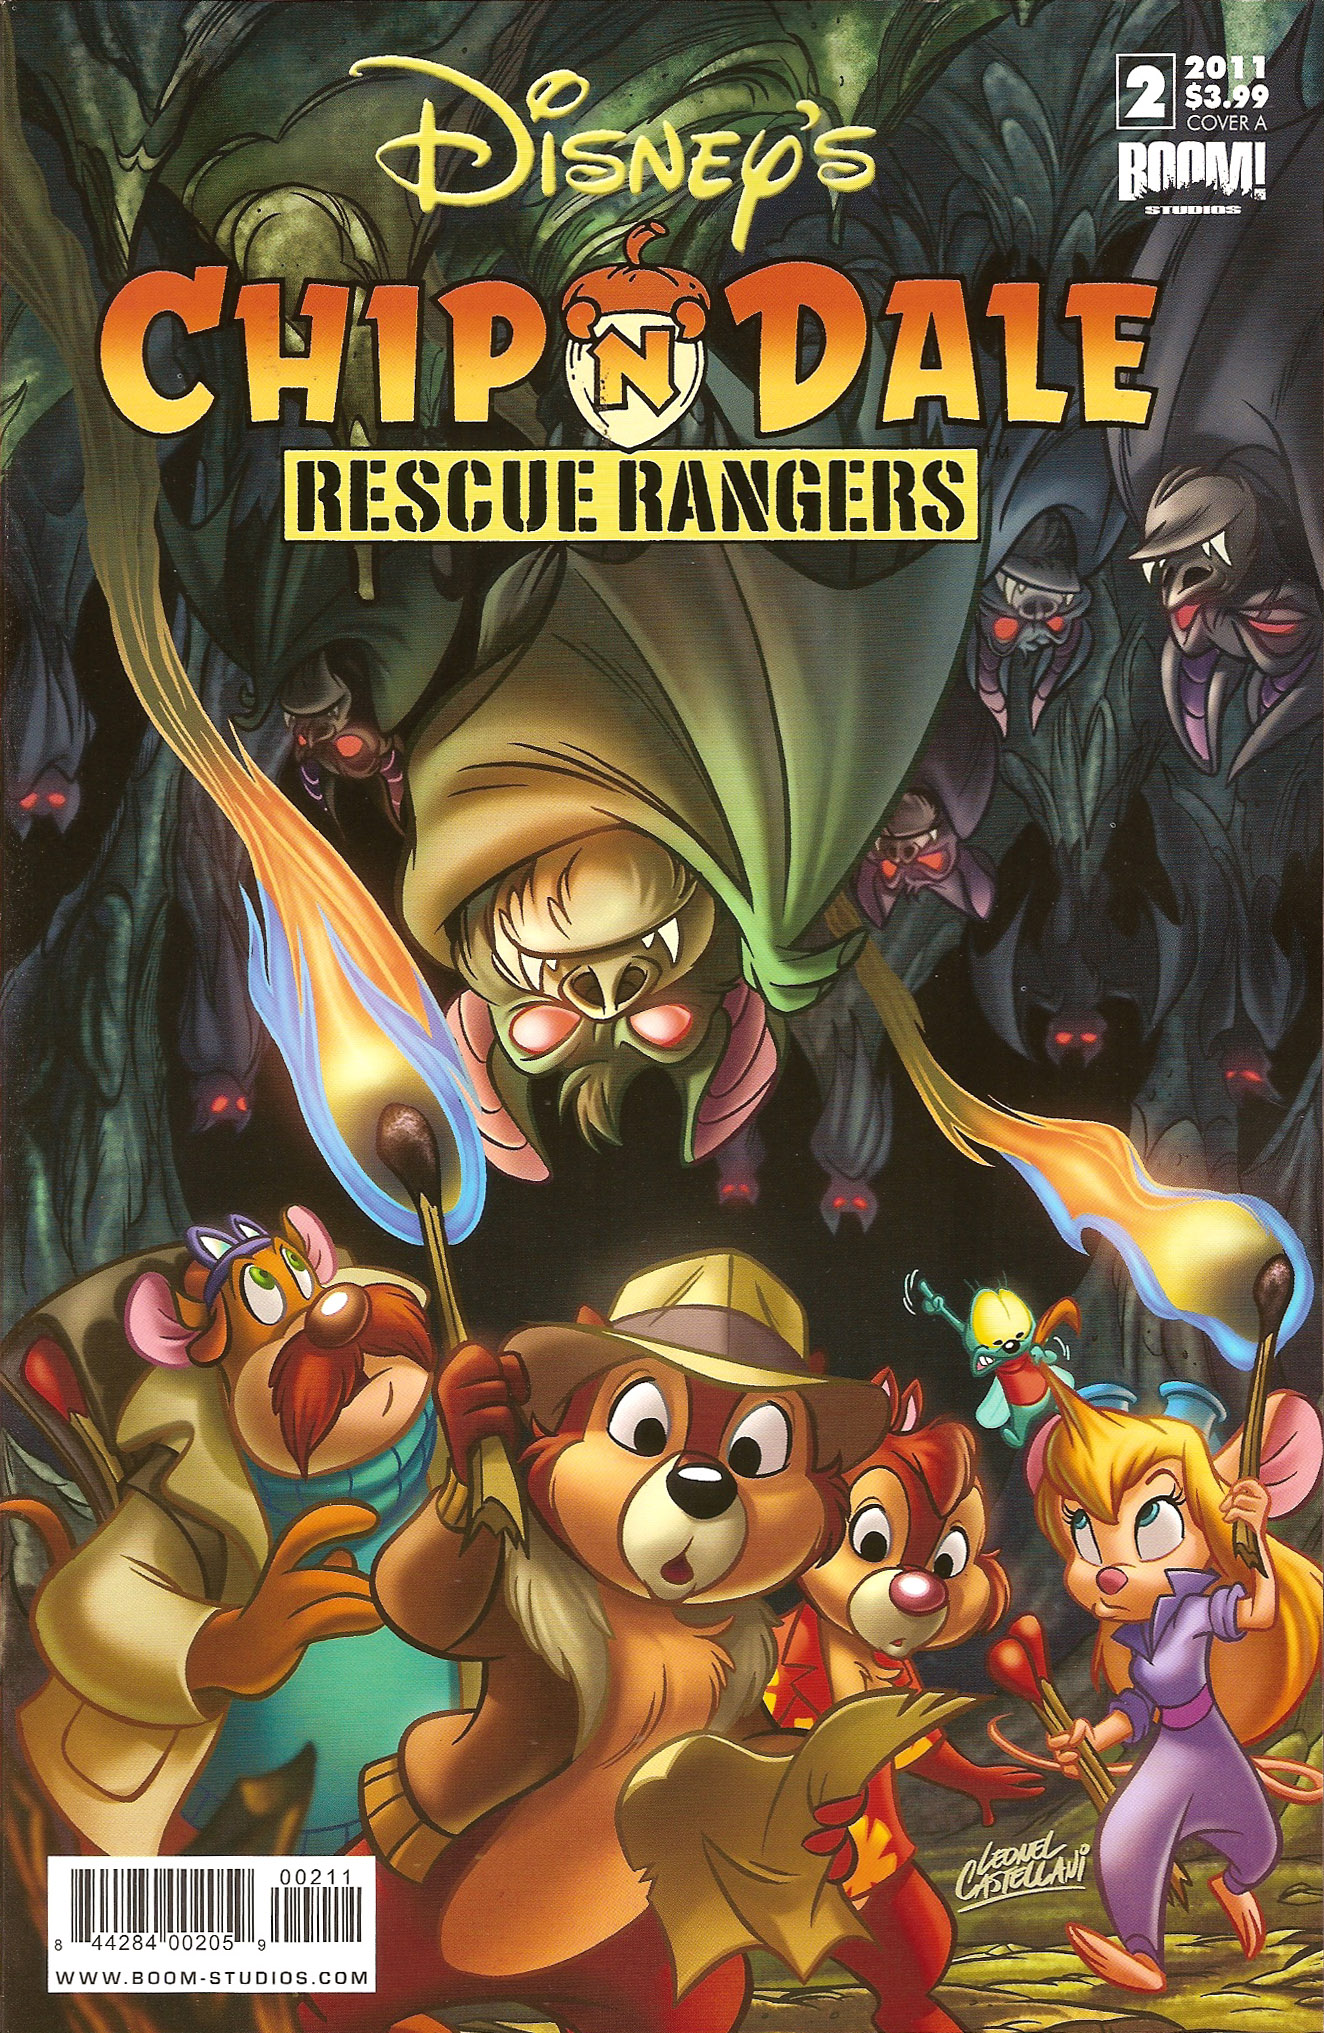 Комиксы «Chip and Dale: Rescue rangers» (Boom Studios) - на английском